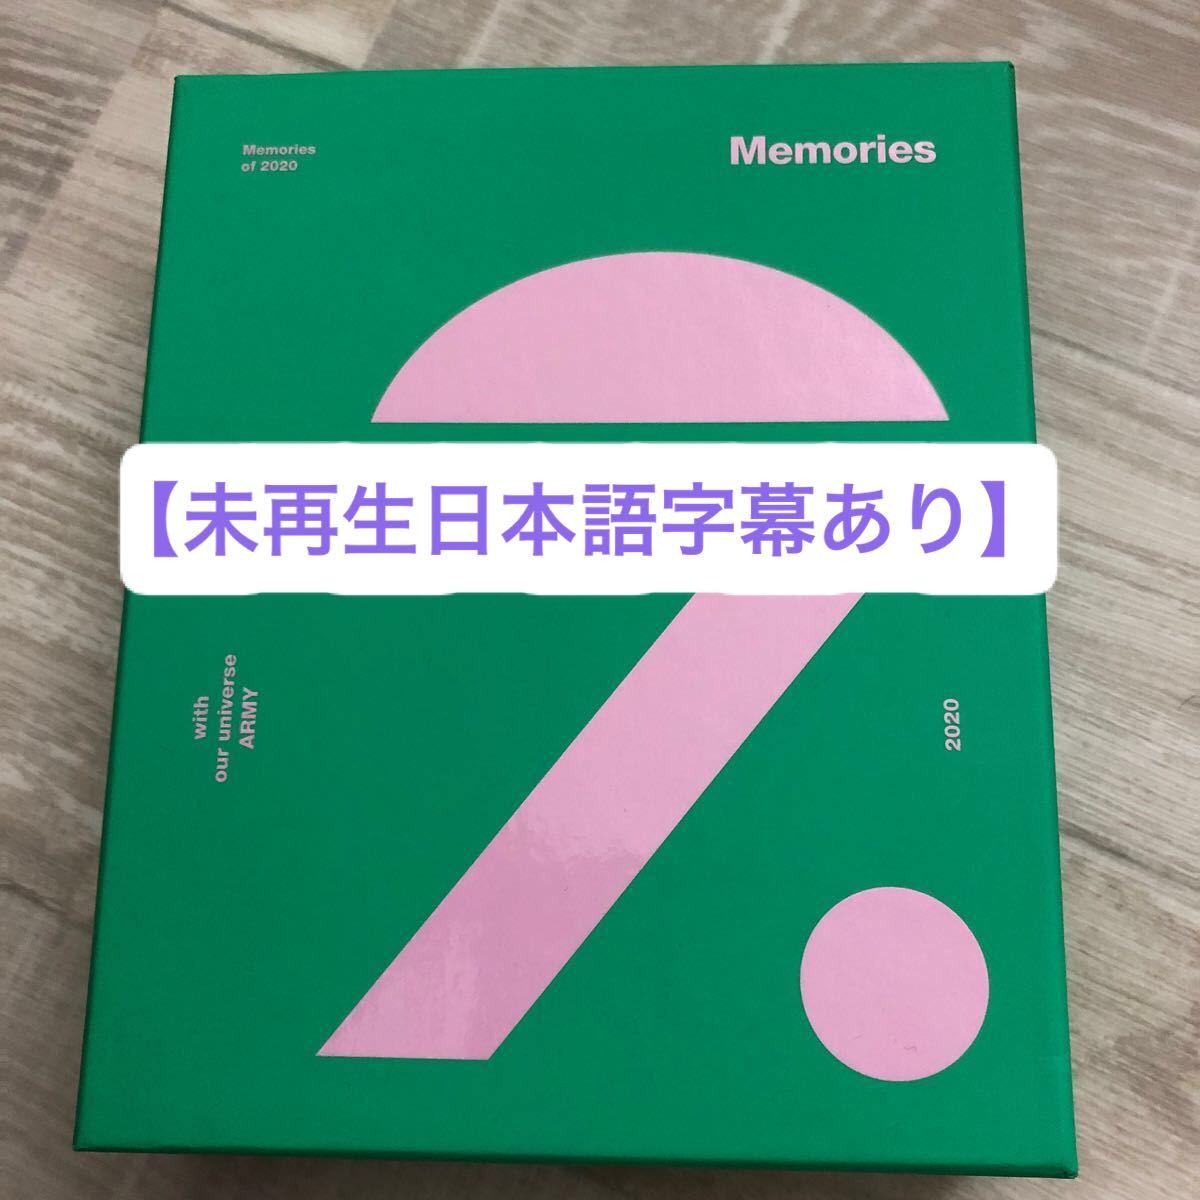 【日本語字幕付】BTS Memoriesof2020 Blu-ray